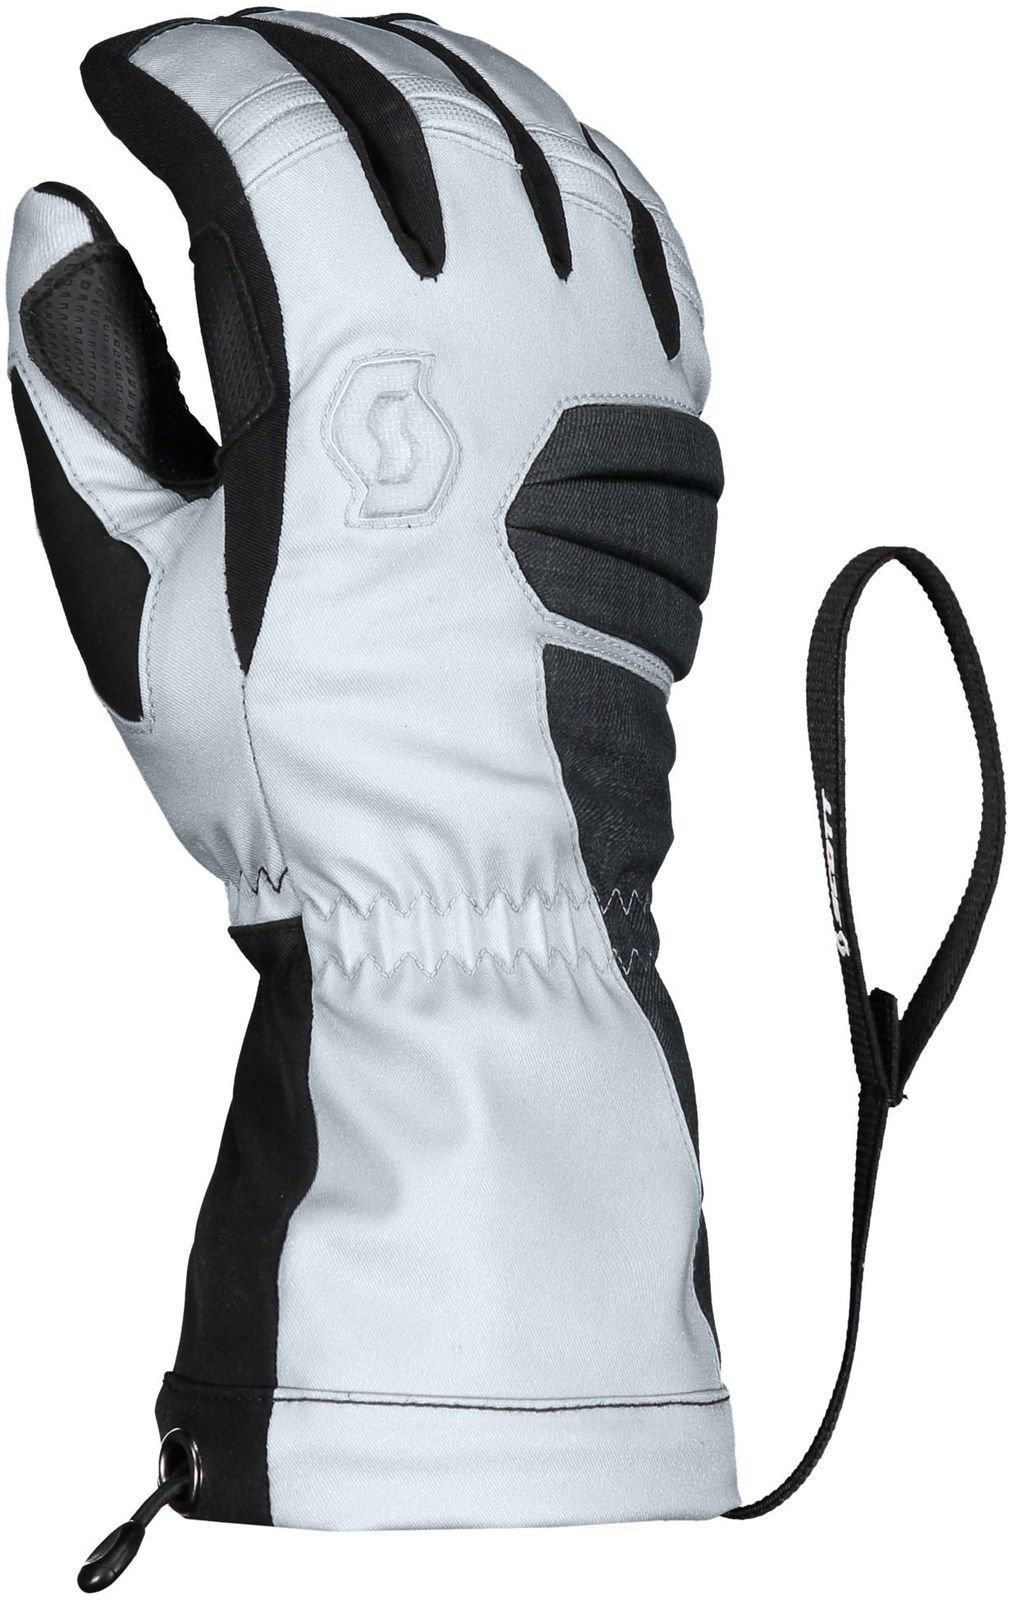 SkI Handschuhe Scott Ultimate Premium GTX Black/Silver White M SkI Handschuhe